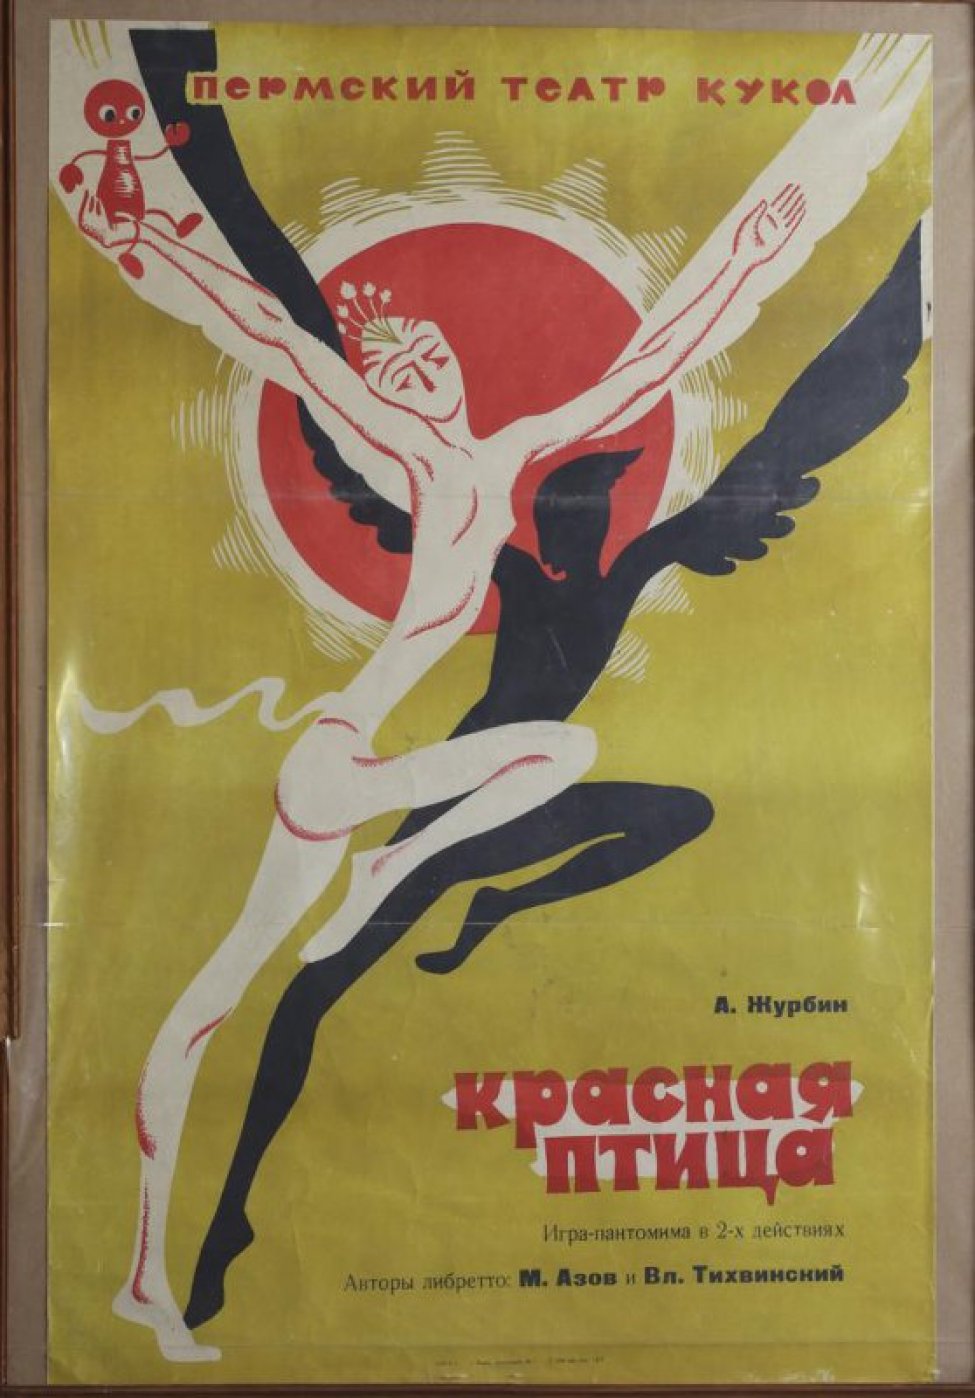 На оливковом фоне - стилизованное изображение солнца и двух танцующих актеров: балерины в костюме птицы с жуком в руке и, черным силуэтом, танцора - также в костюме птицы.